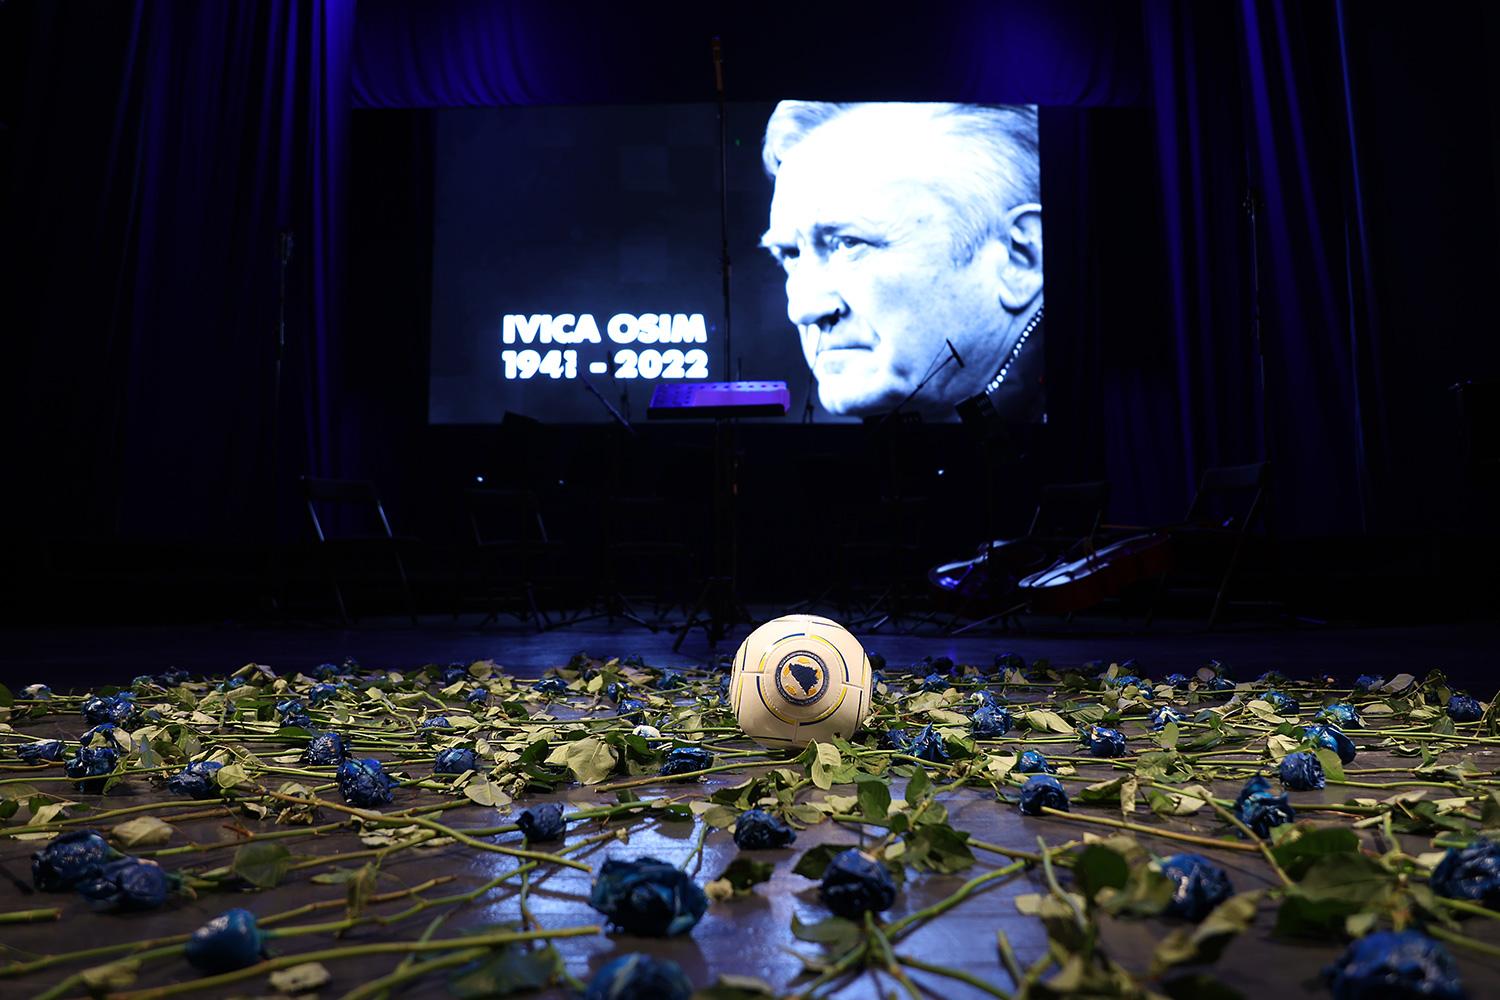 Uz stadion će biti postavljen i ogromni buket sa 1000 plavo-bijelih ruža i portret Ivice Osima - Avaz